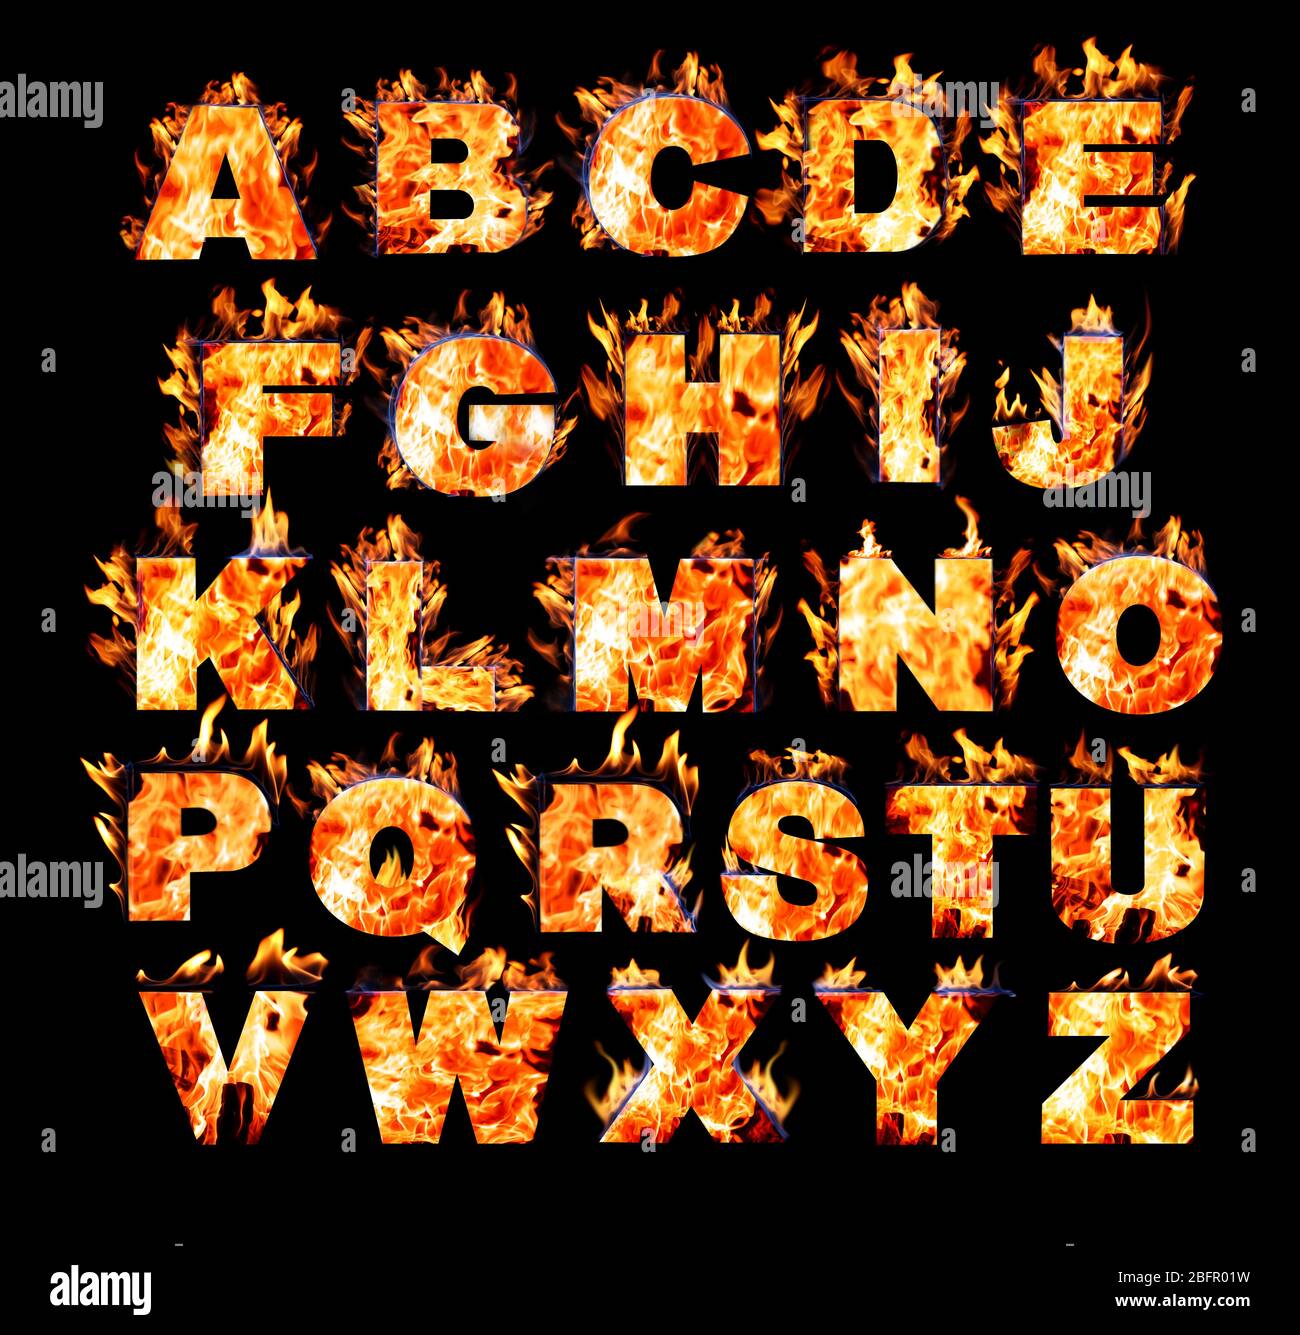 Burning alphabet on black background Stock Photo - Alamy